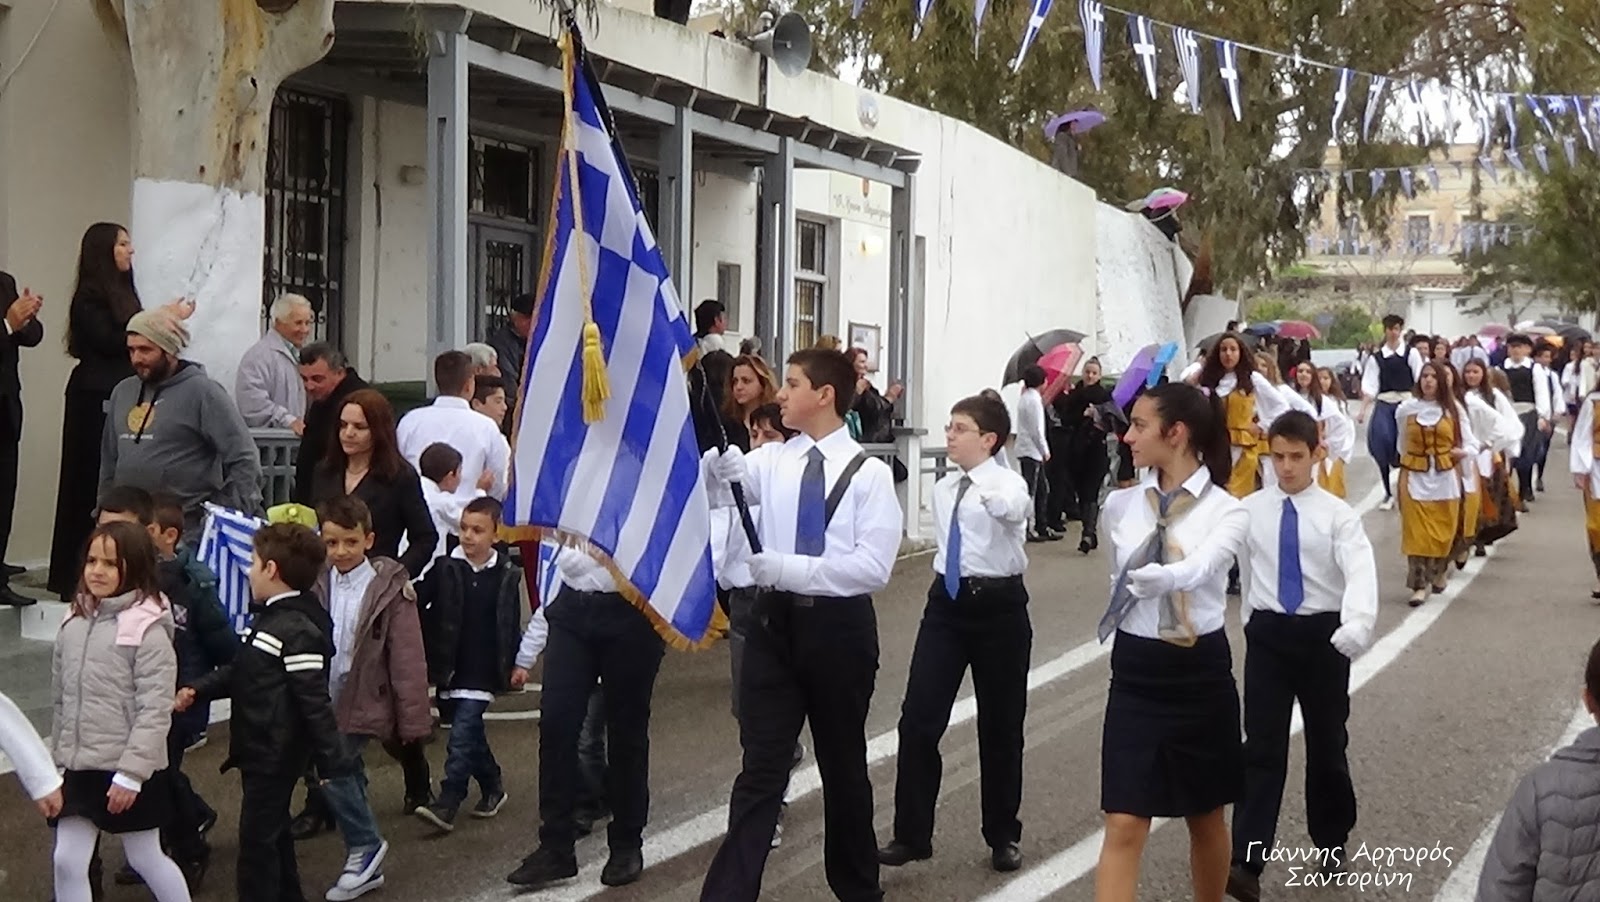 Σαντορίνη: Ομάδα εθνικιστών διέκοψε παρέλαση – Είχε δοθεί σημαία σε Αλβανίδα μαθήτρια (βίντεο)